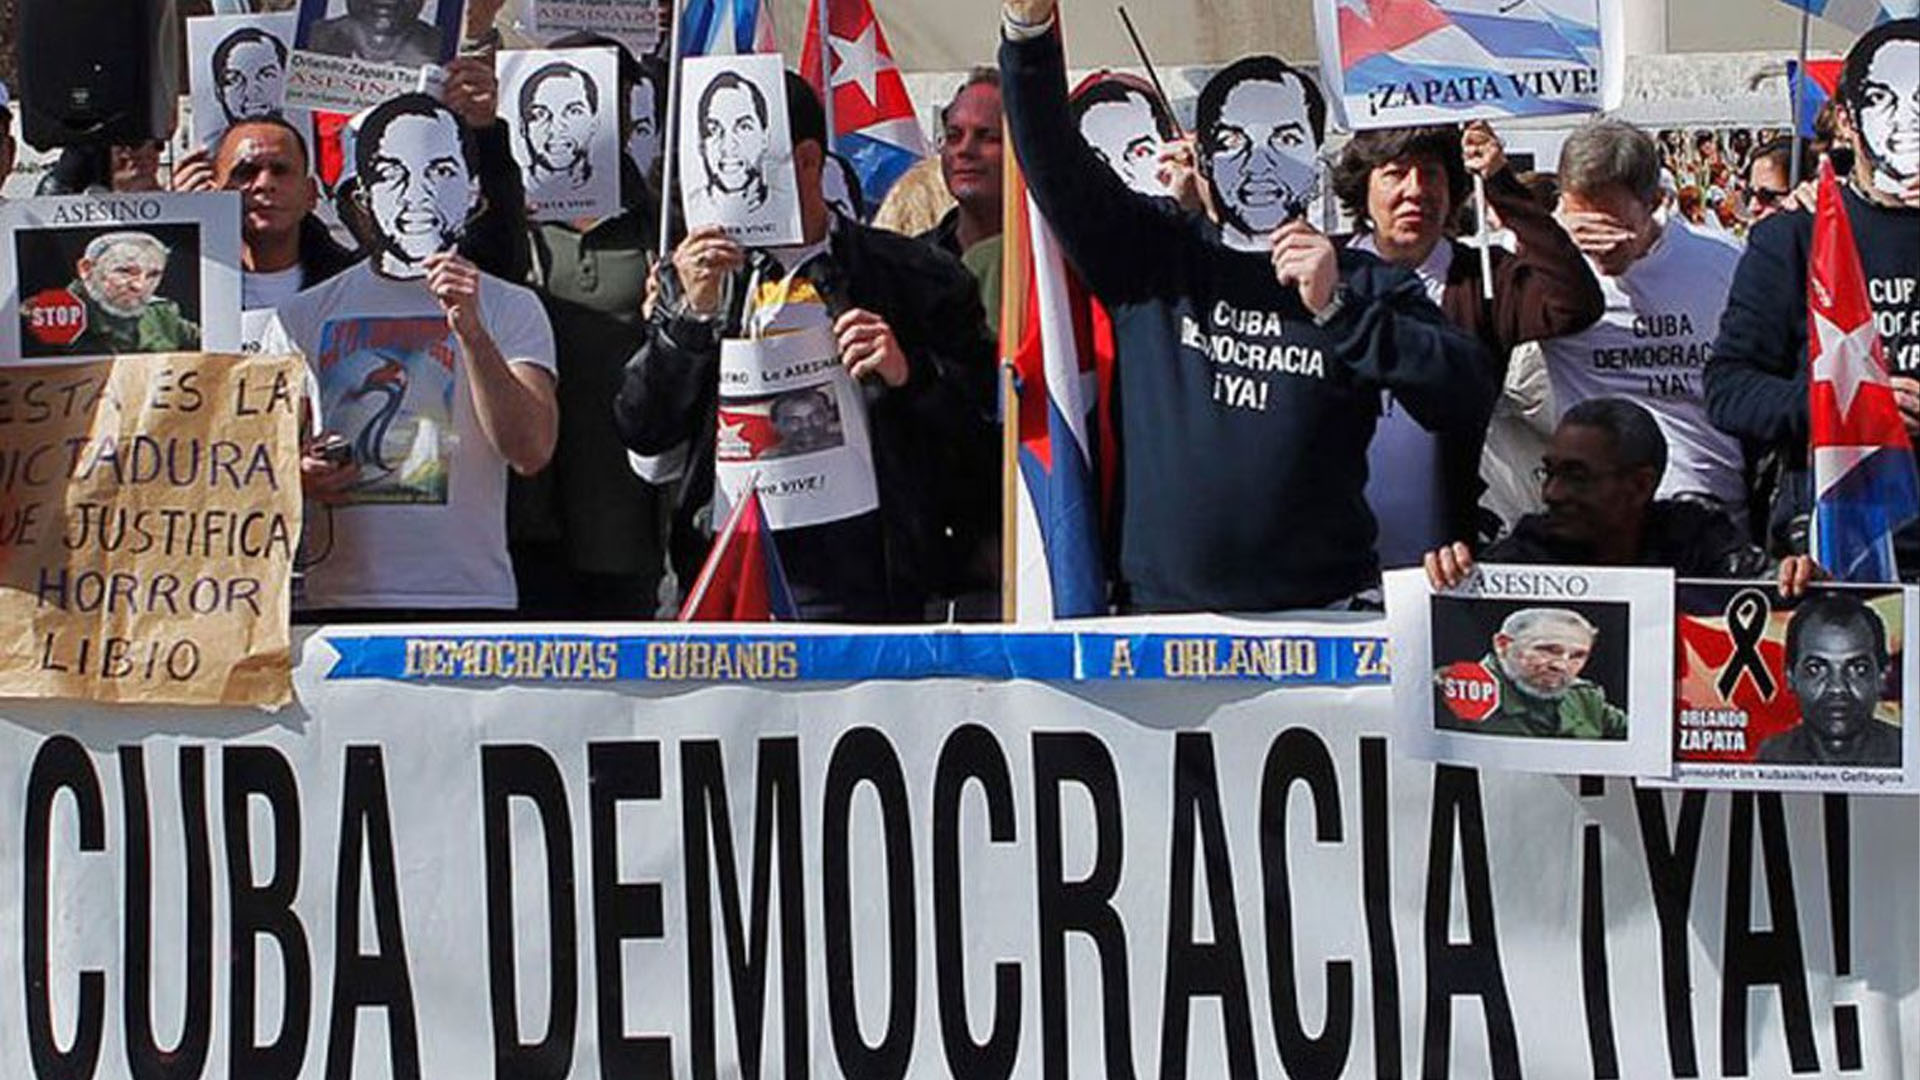 EE UU: 20 millones para apoyar democracia en Cuba